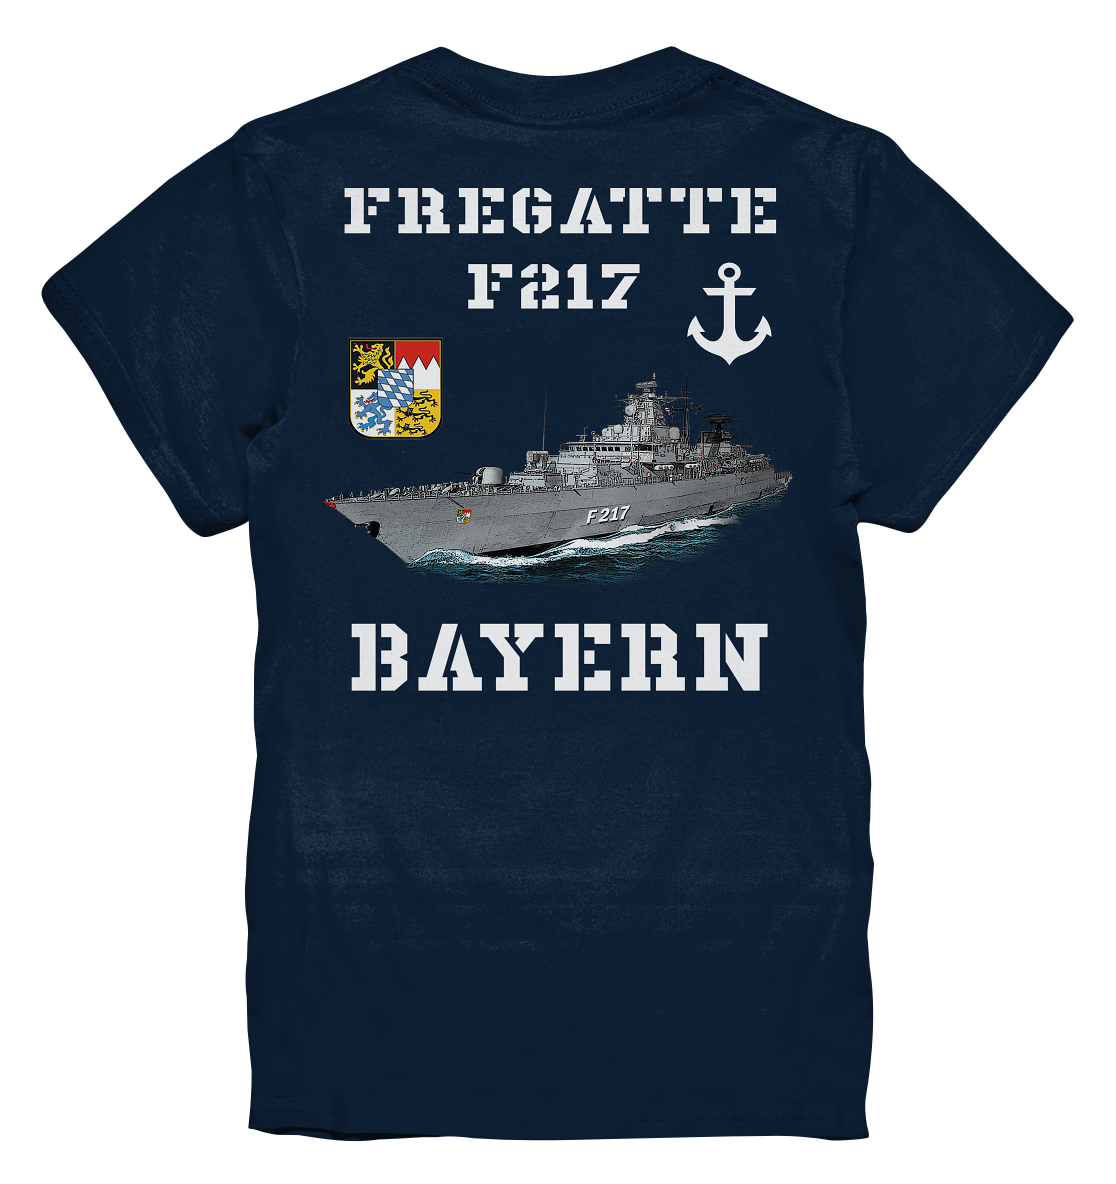 Fregatte F217 BAYERN beidseitig - Kids Premium Shirt